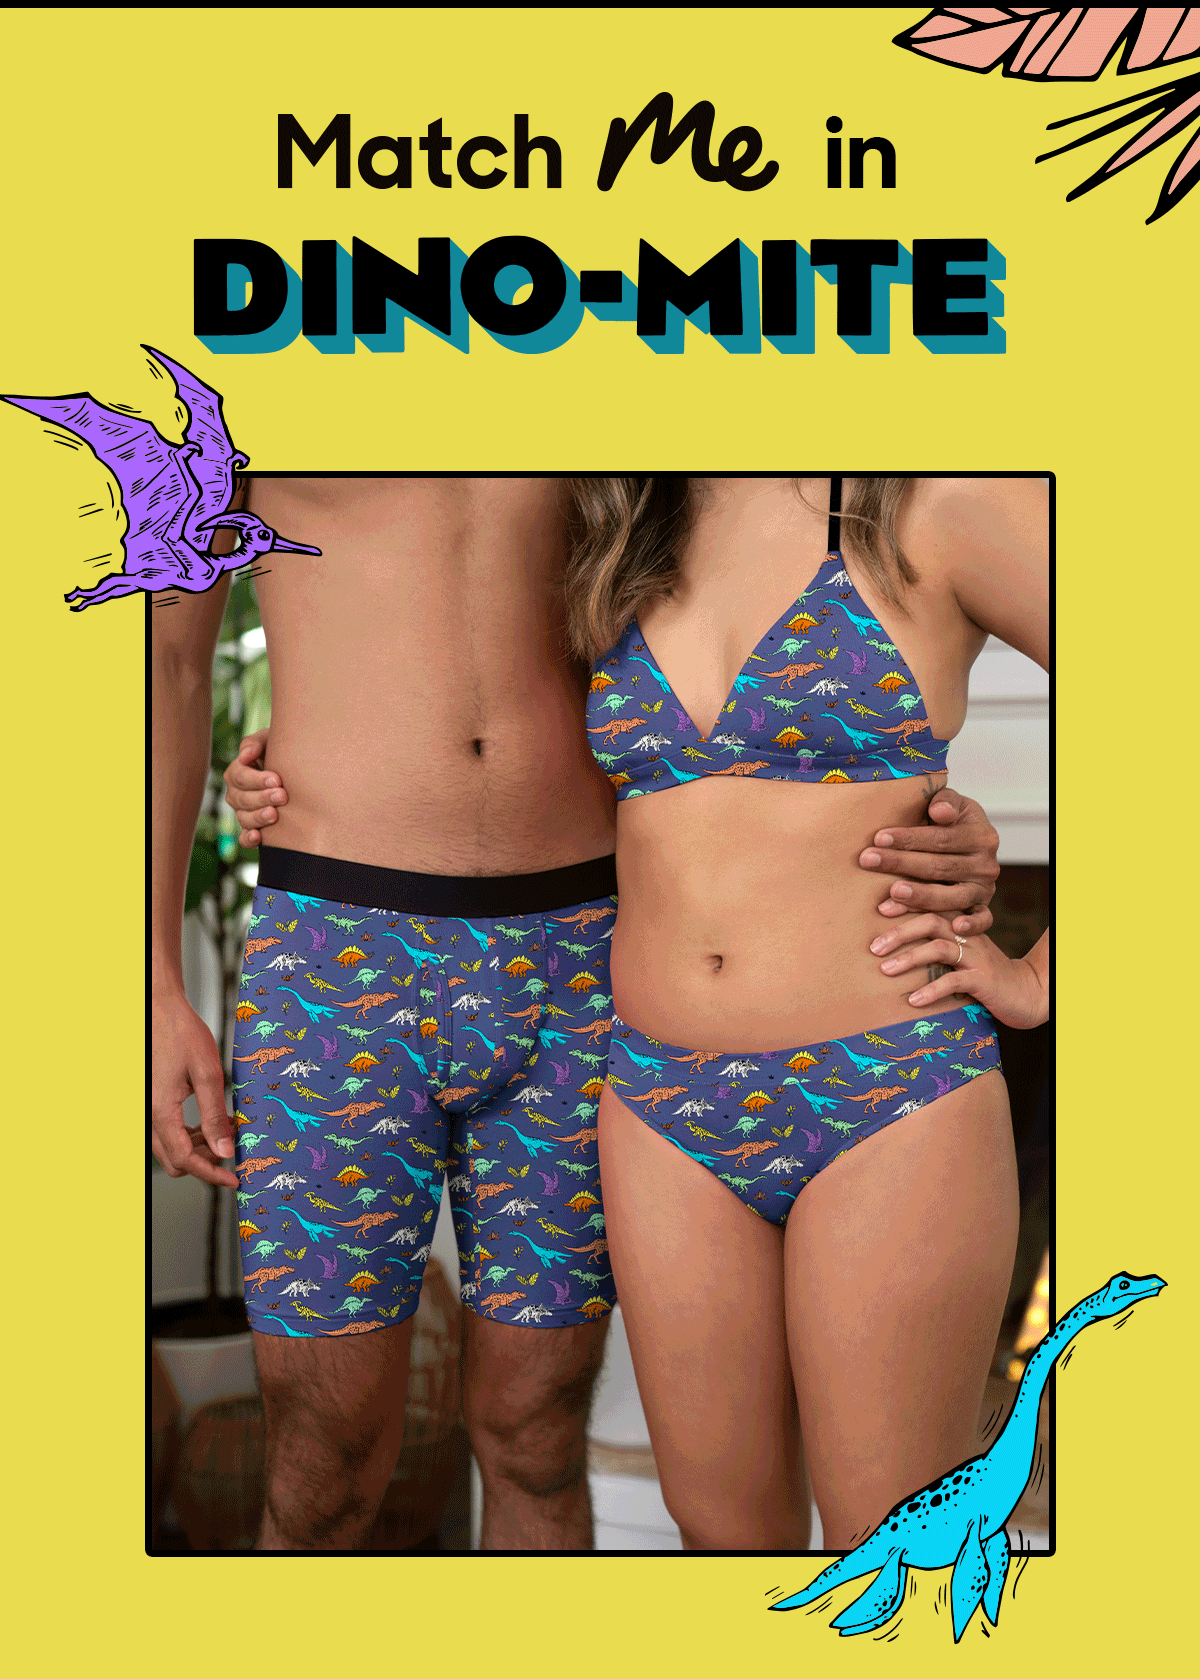 MeUndies : New Print for Dinosaur Lovers